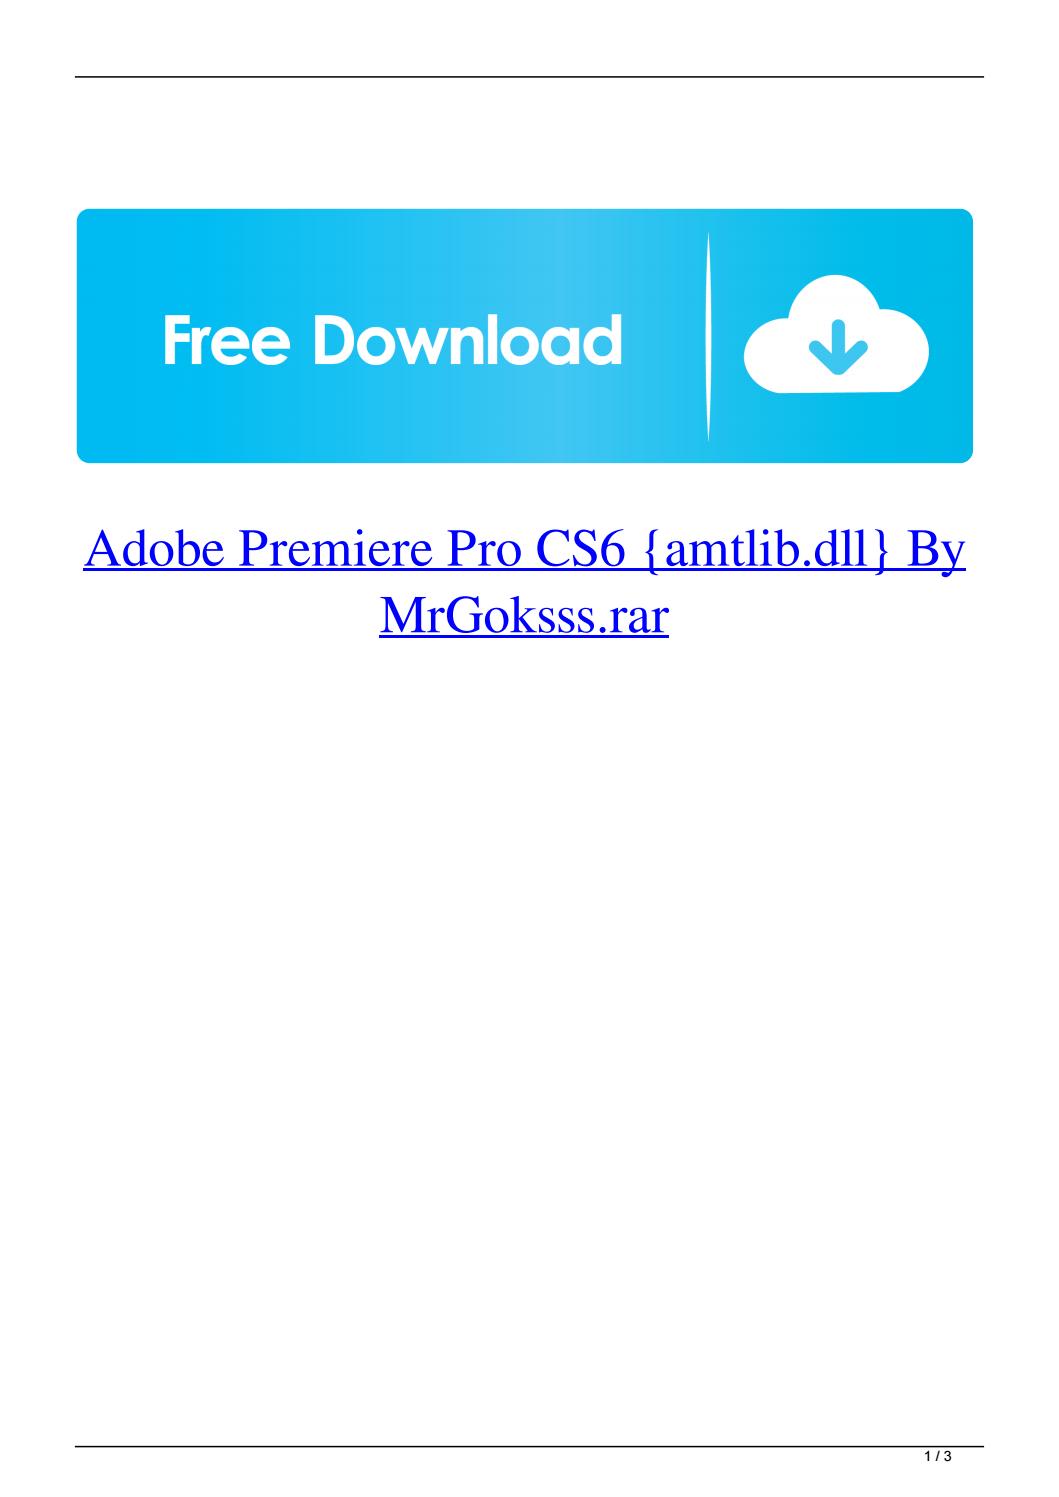 Adobe premiere pro cs6 free download